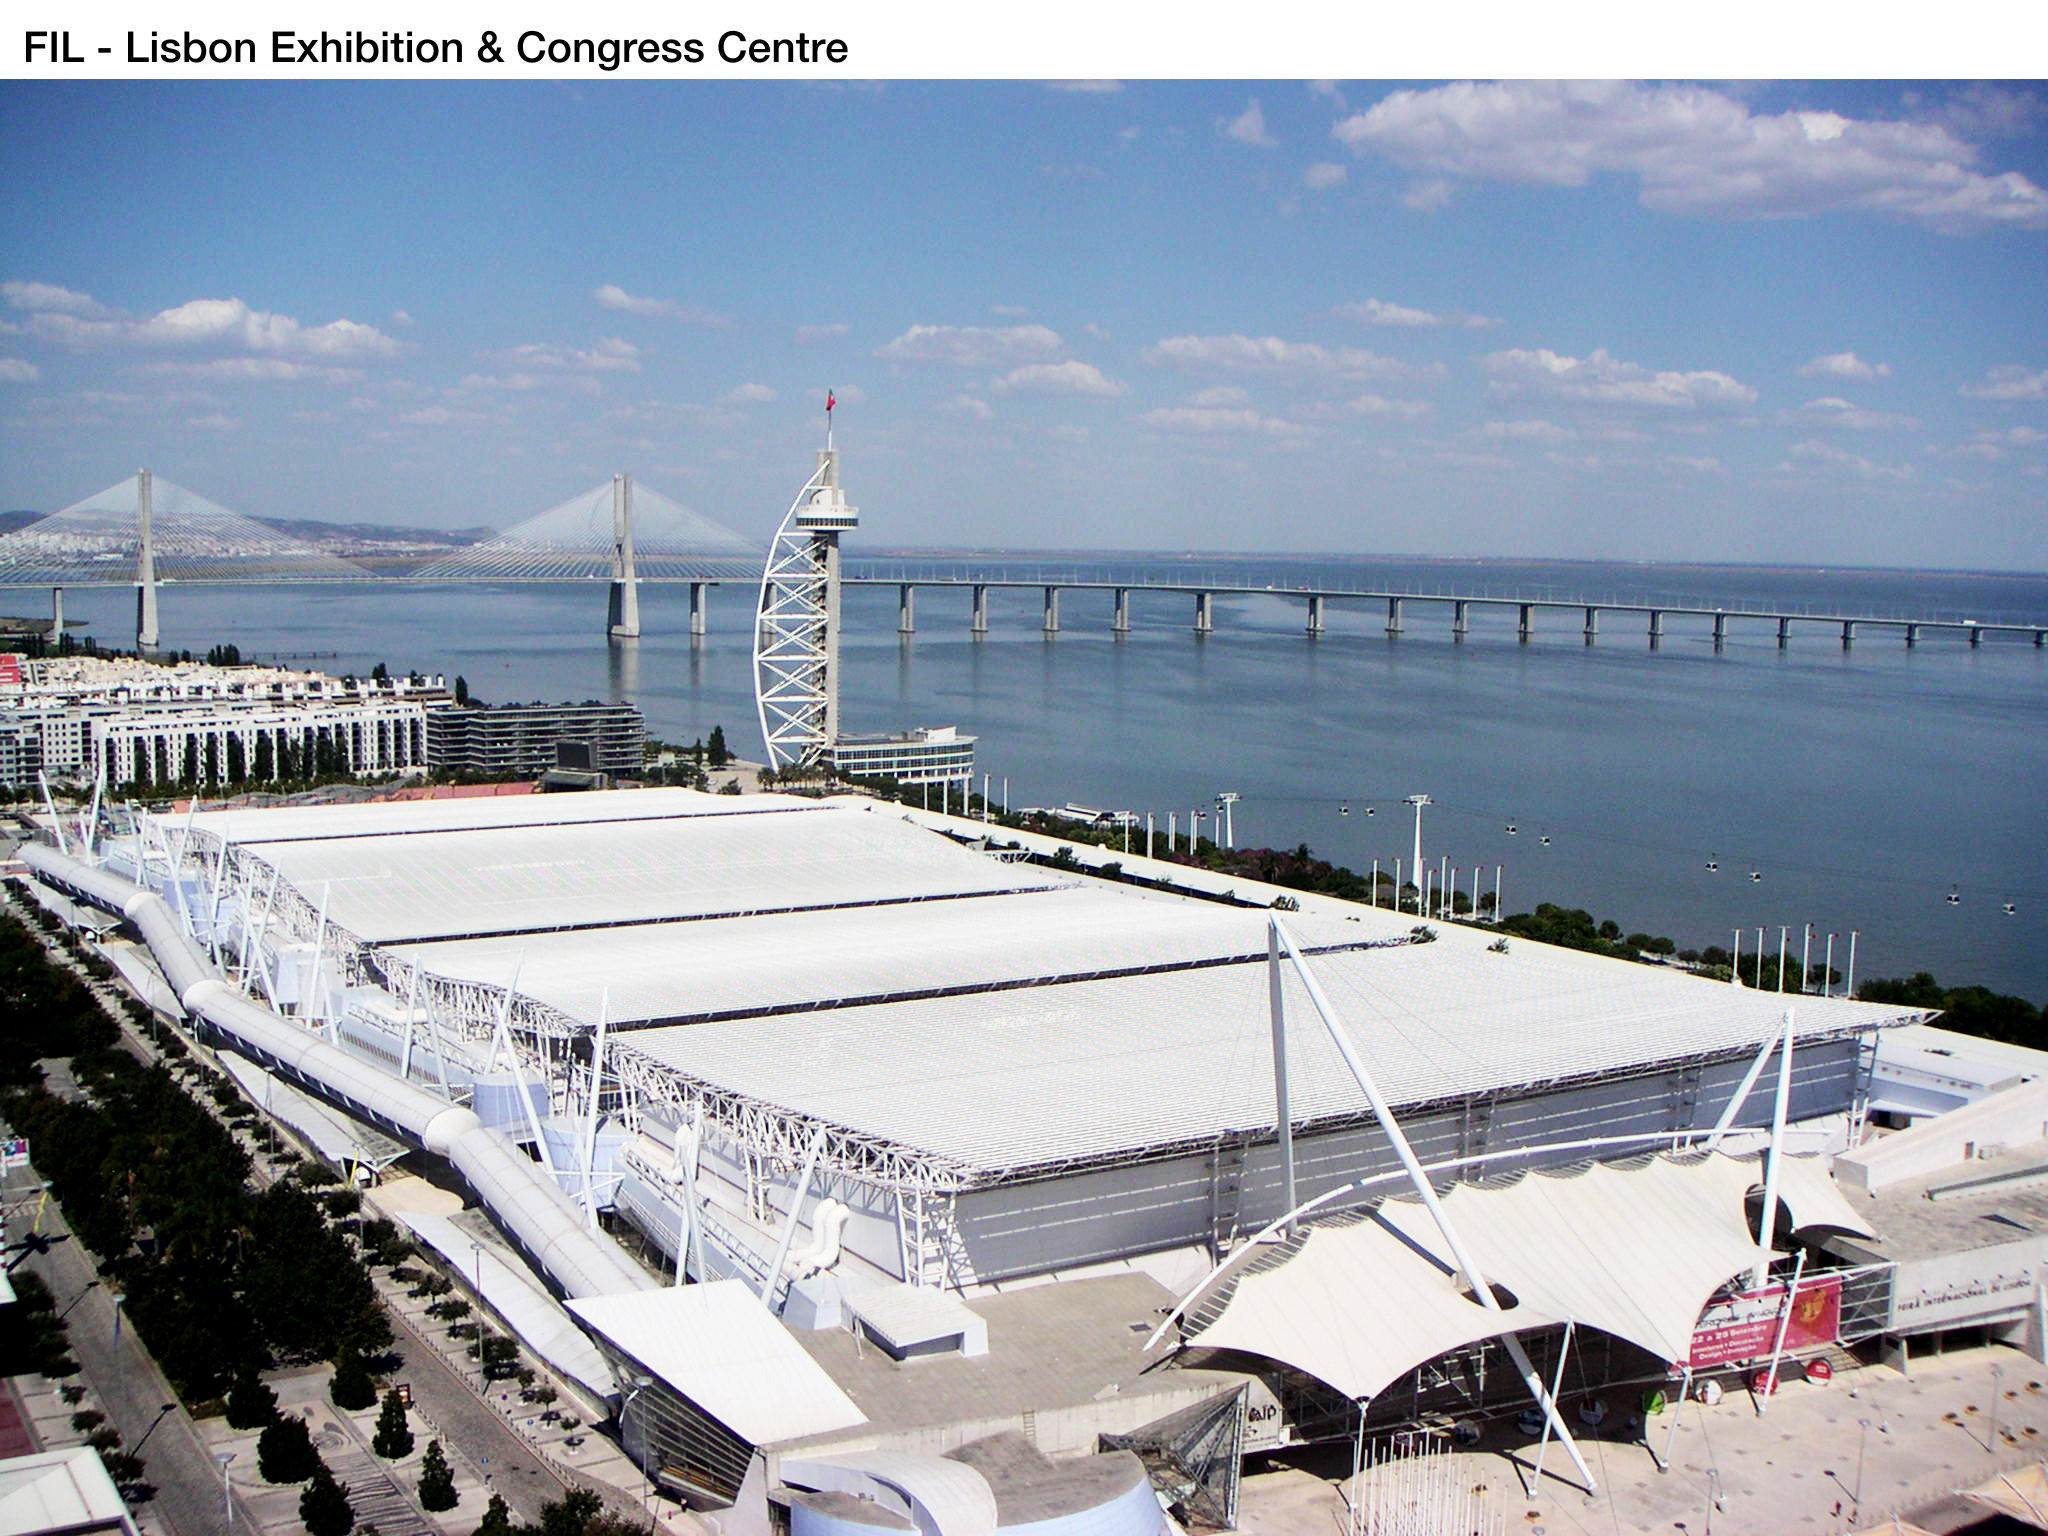 FIL Lisbon Exhibition & Congress Centre